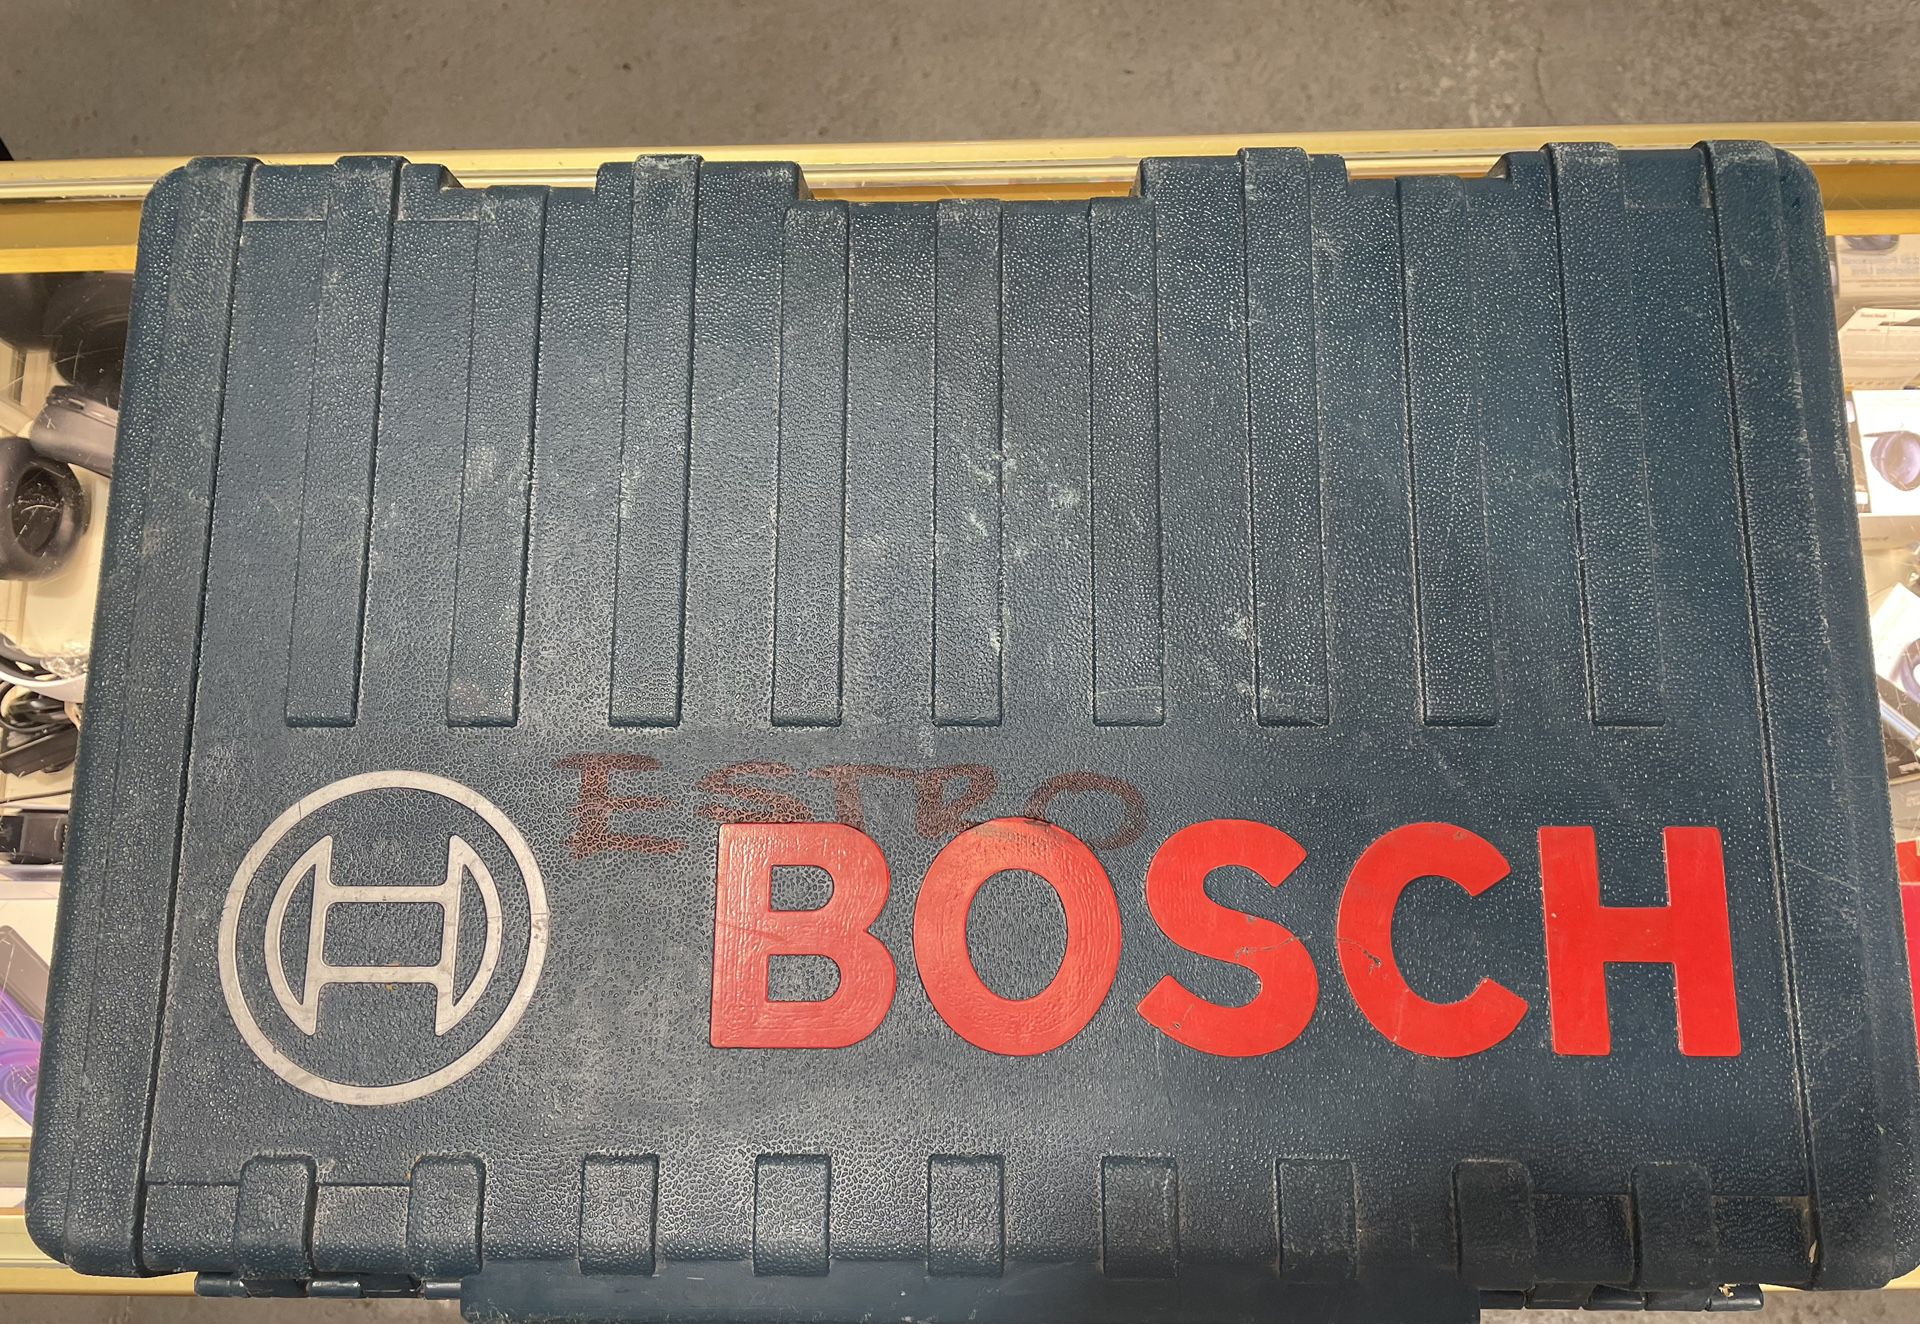 Bosch Rotary Hammer